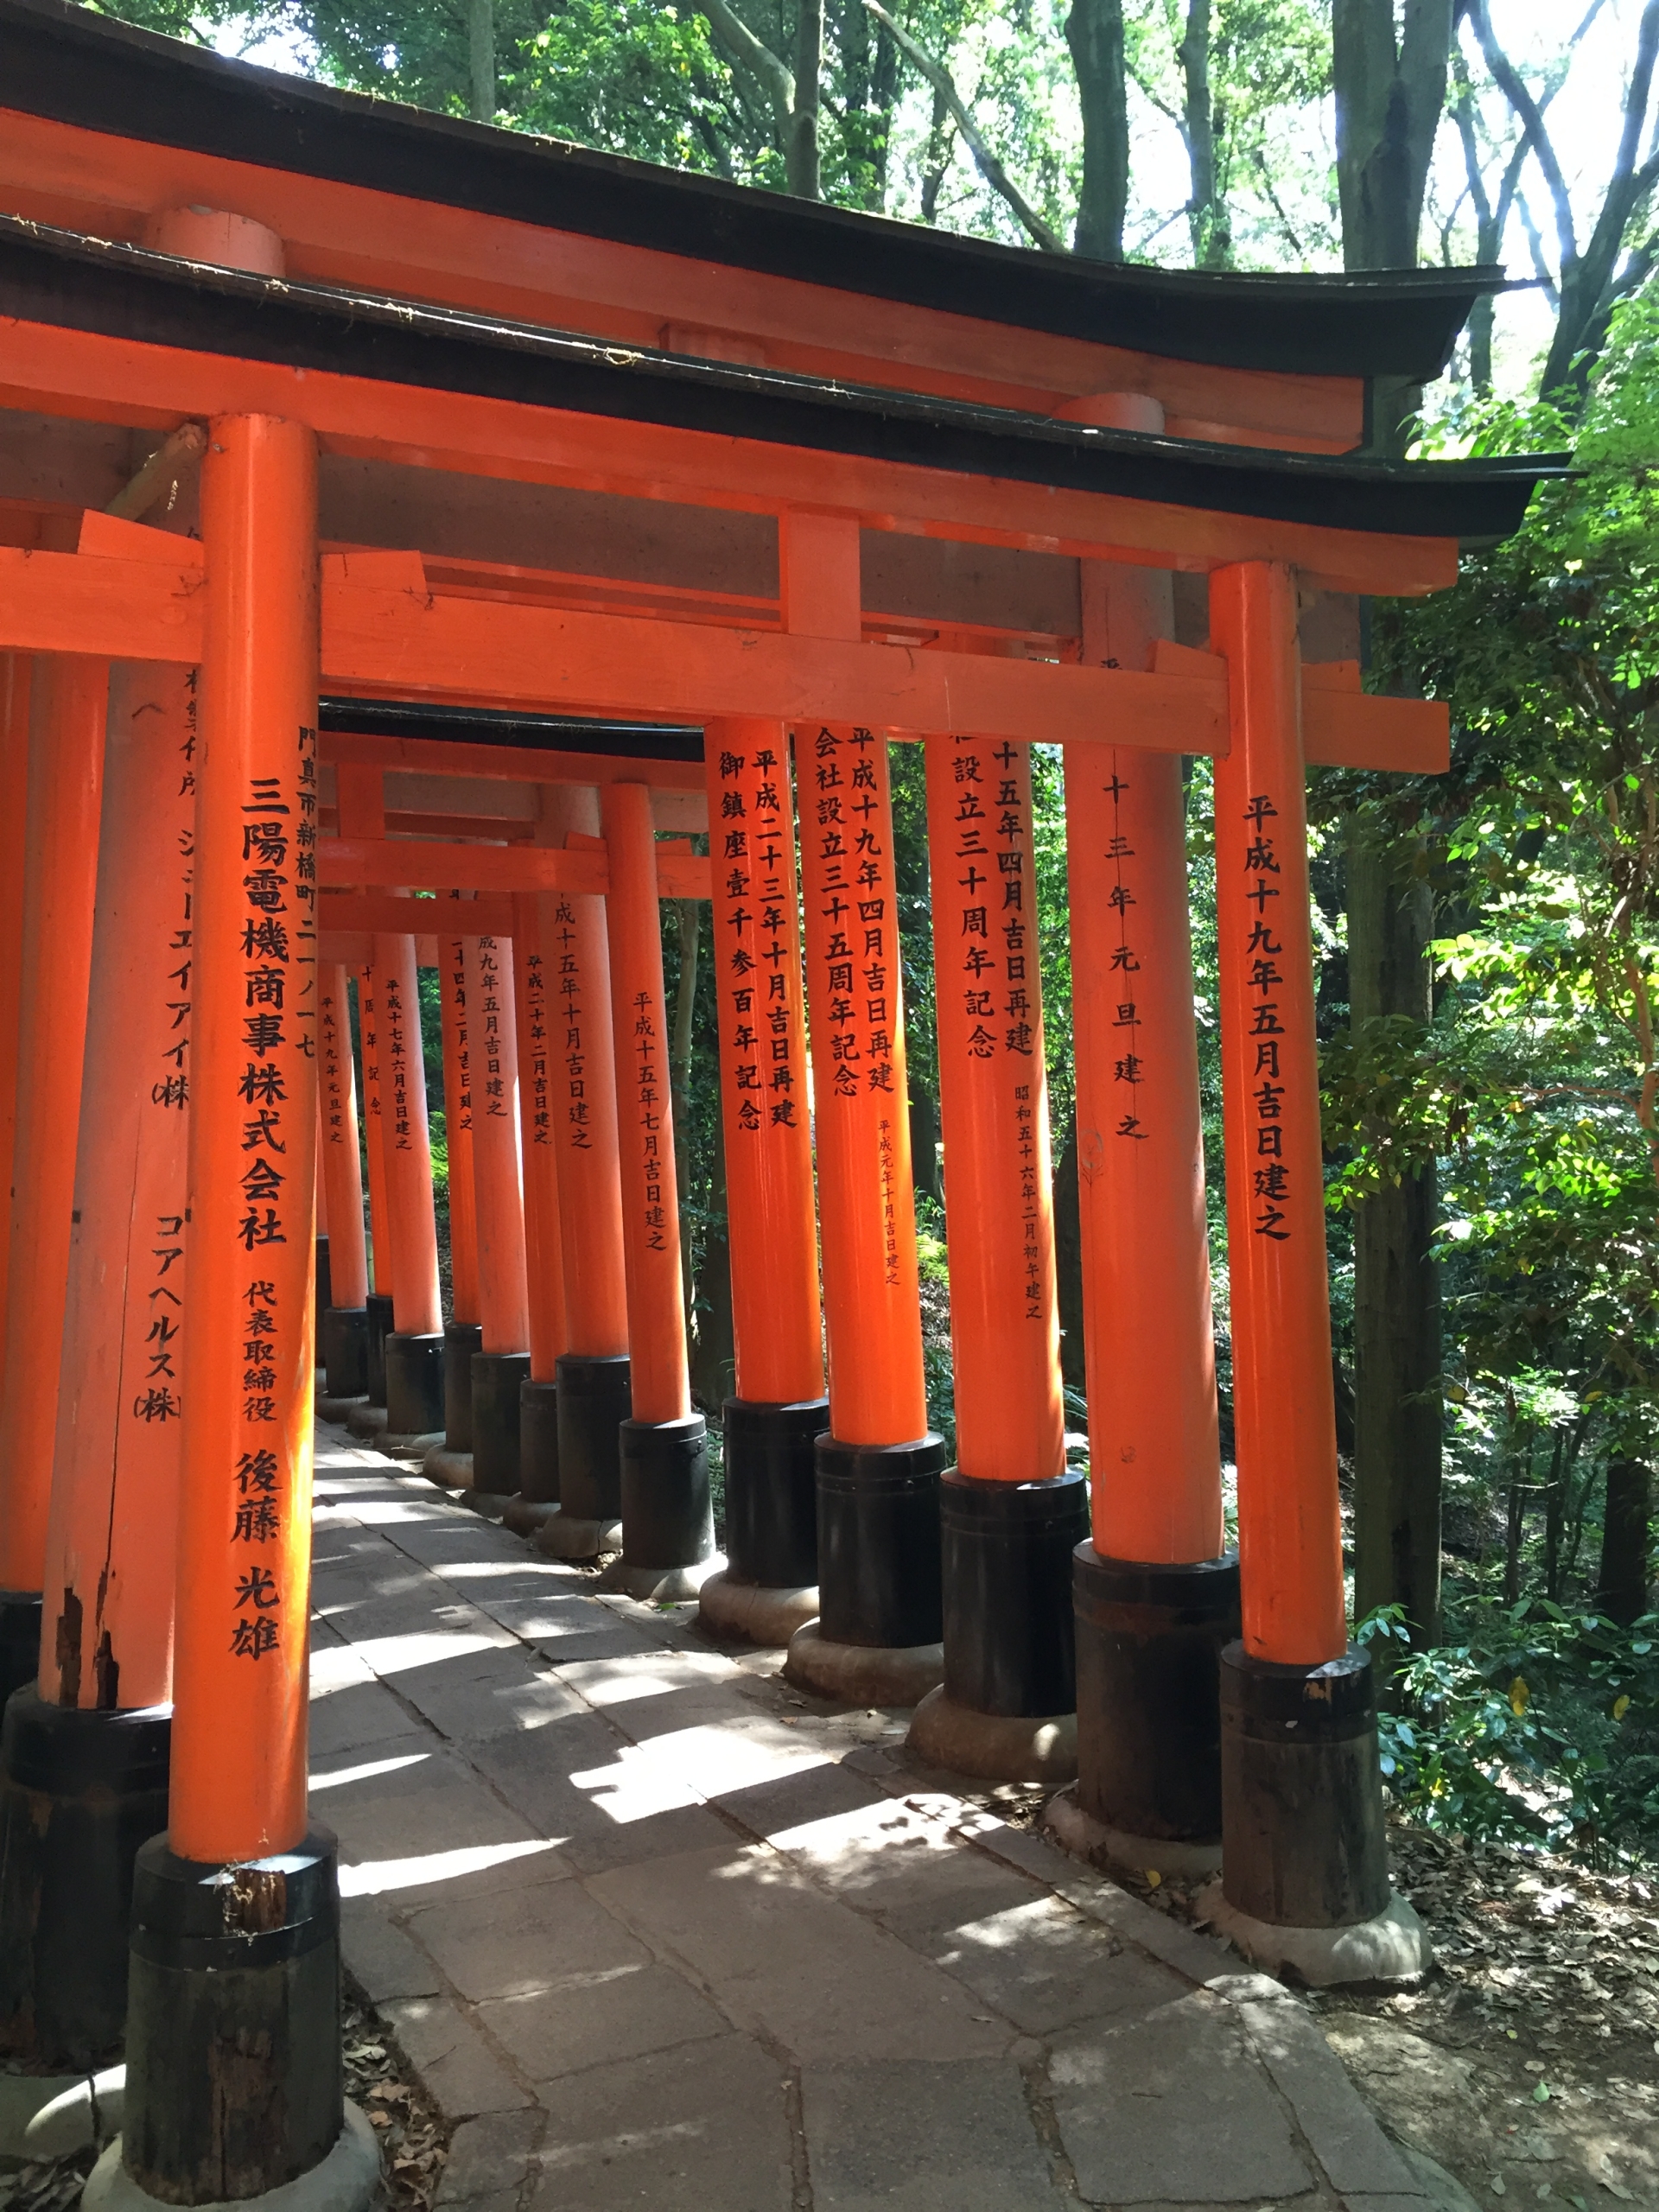 čo vidieť v meste Kjóto: oranžové brány tzv. torii v chráme Fushimi Inari Taisha